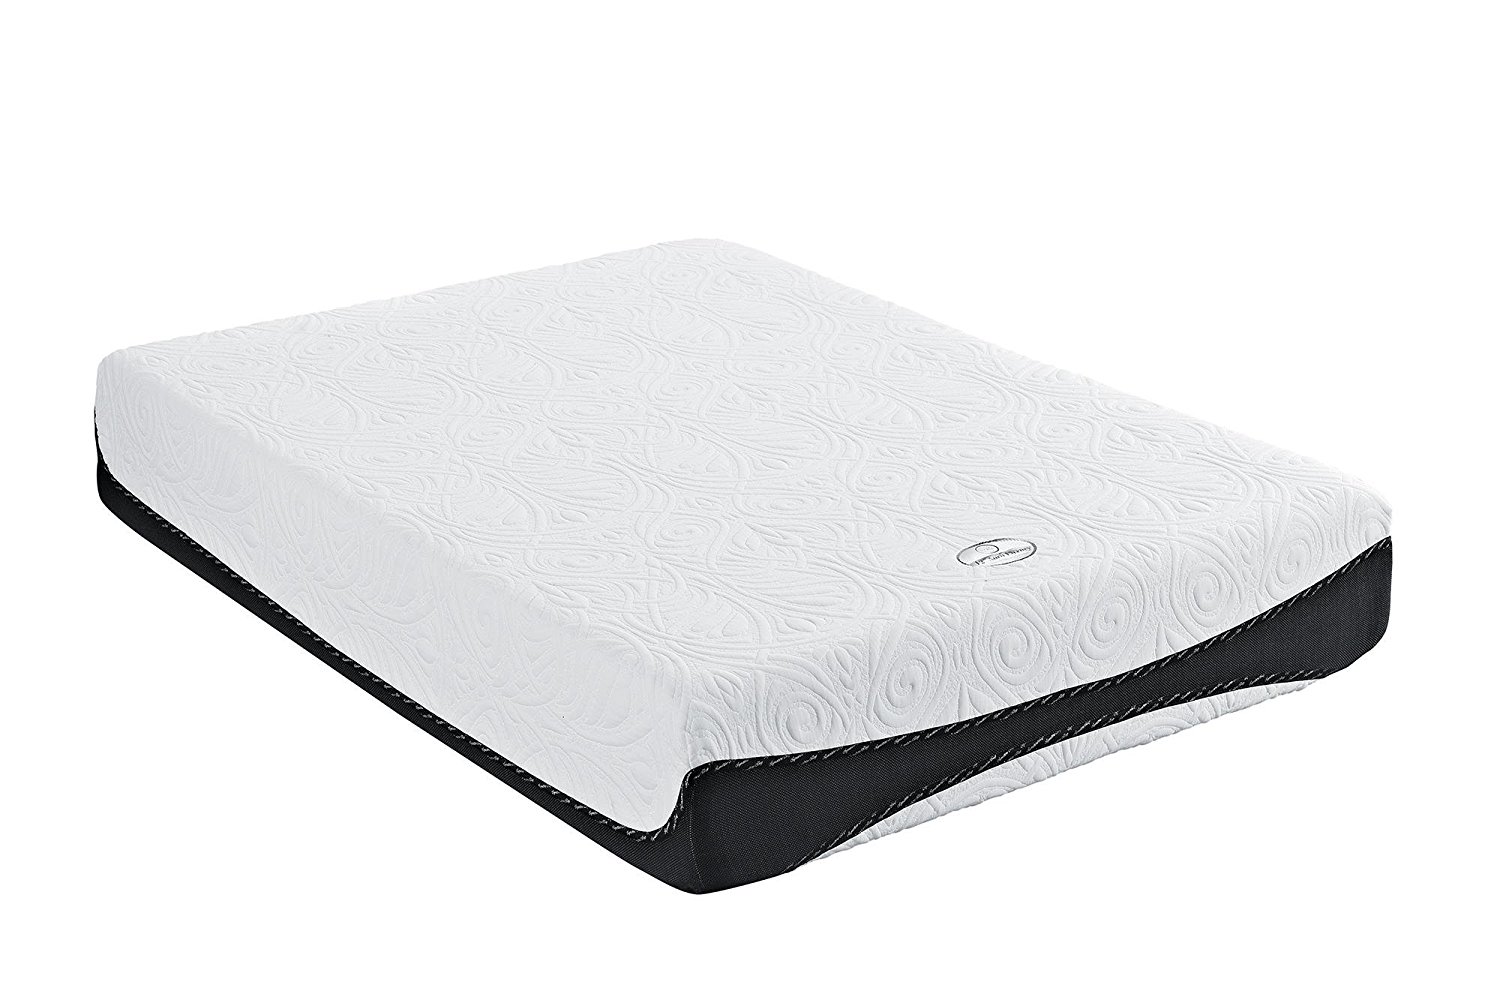 sleep trends memory foam mattress reviews